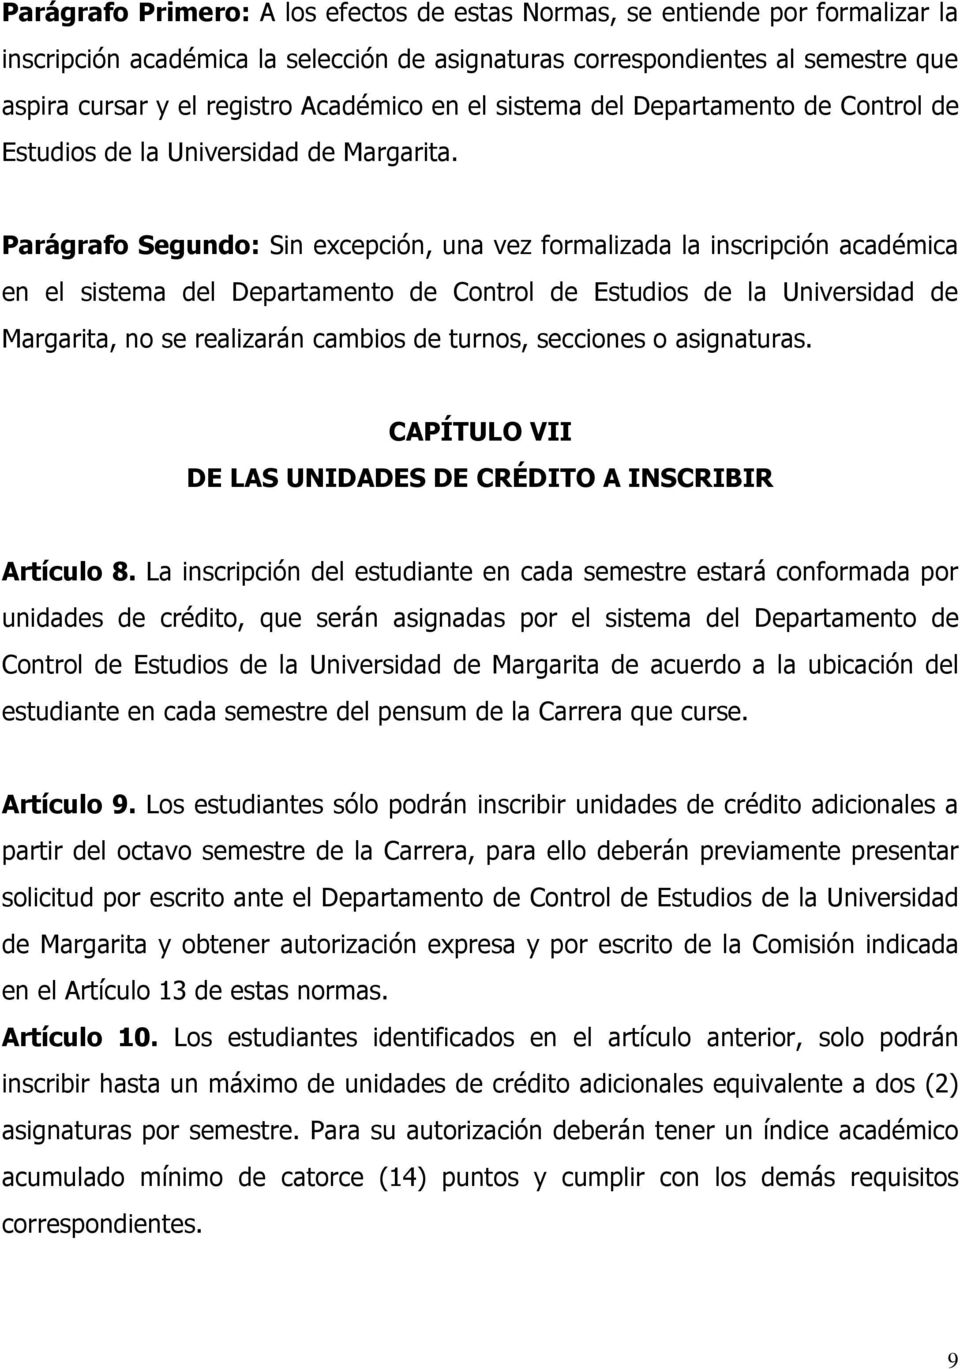 Parágrafo Segundo: Sin excepción, una vez formalizada la inscripción académica en el sistema del Departamento de Control de Estudios de la Universidad de Margarita, no se realizarán cambios de